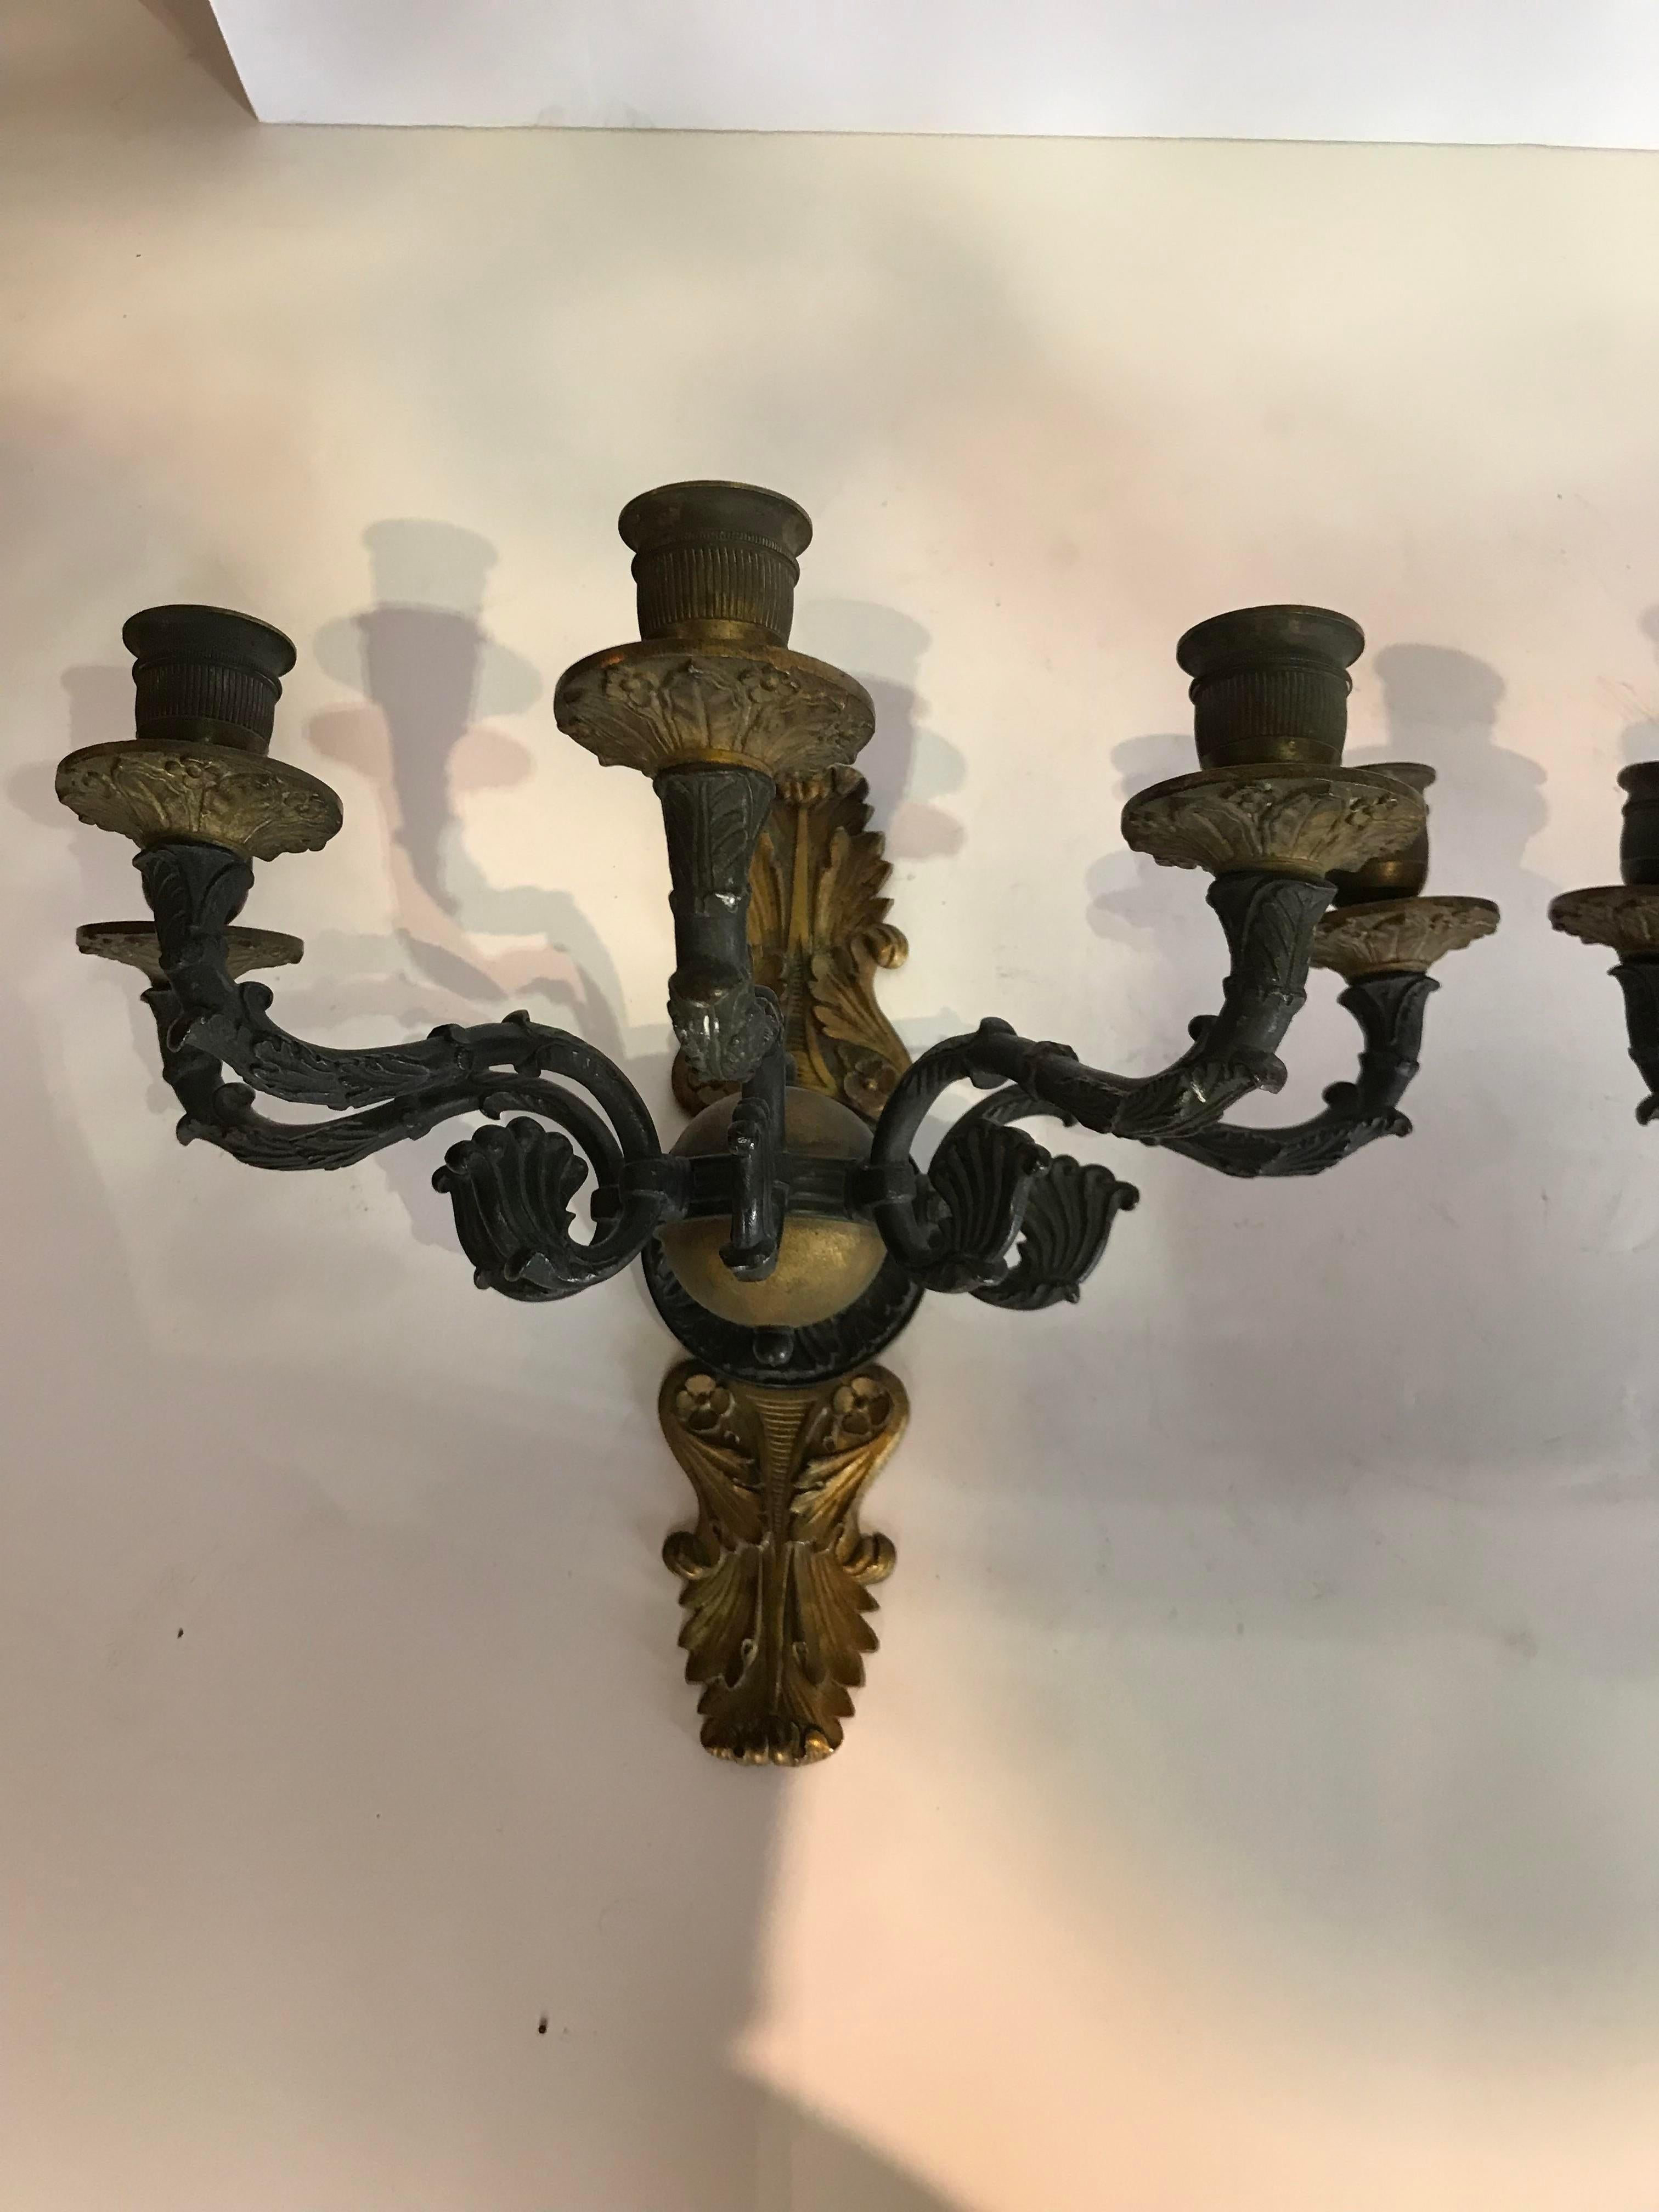 Empire-Kerzenleuchter aus Bronze. Diese Wandleuchten sind von bester Qualität. Sie sind für Kerzen gedacht, können aber auch verkabelt werden.